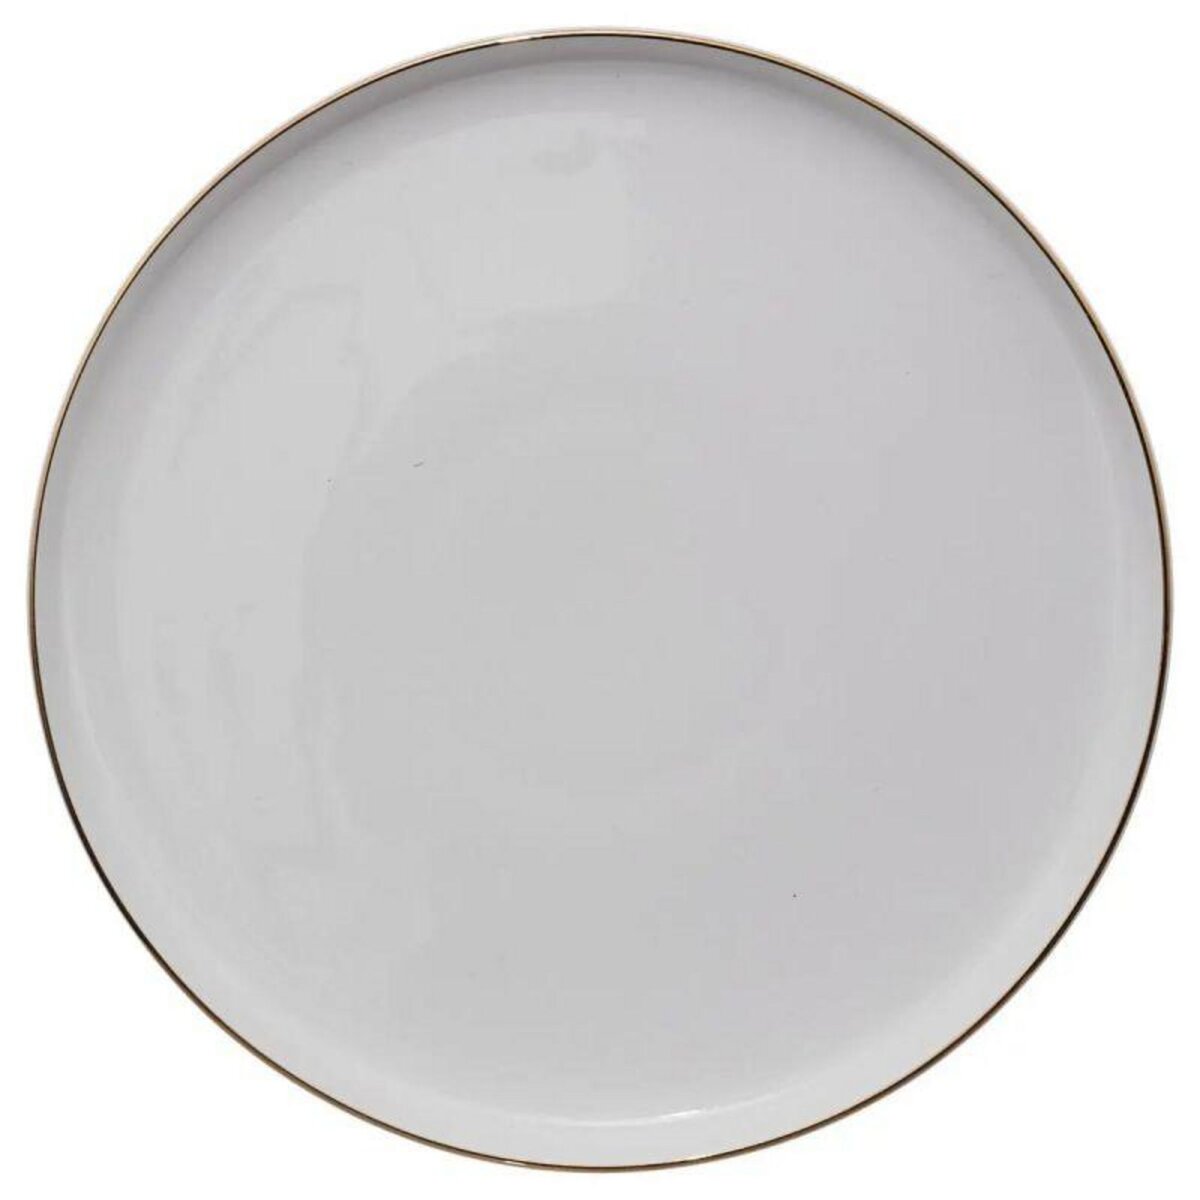  Lot de 6 Assiettes Plates  Sublima  27cm Blanc